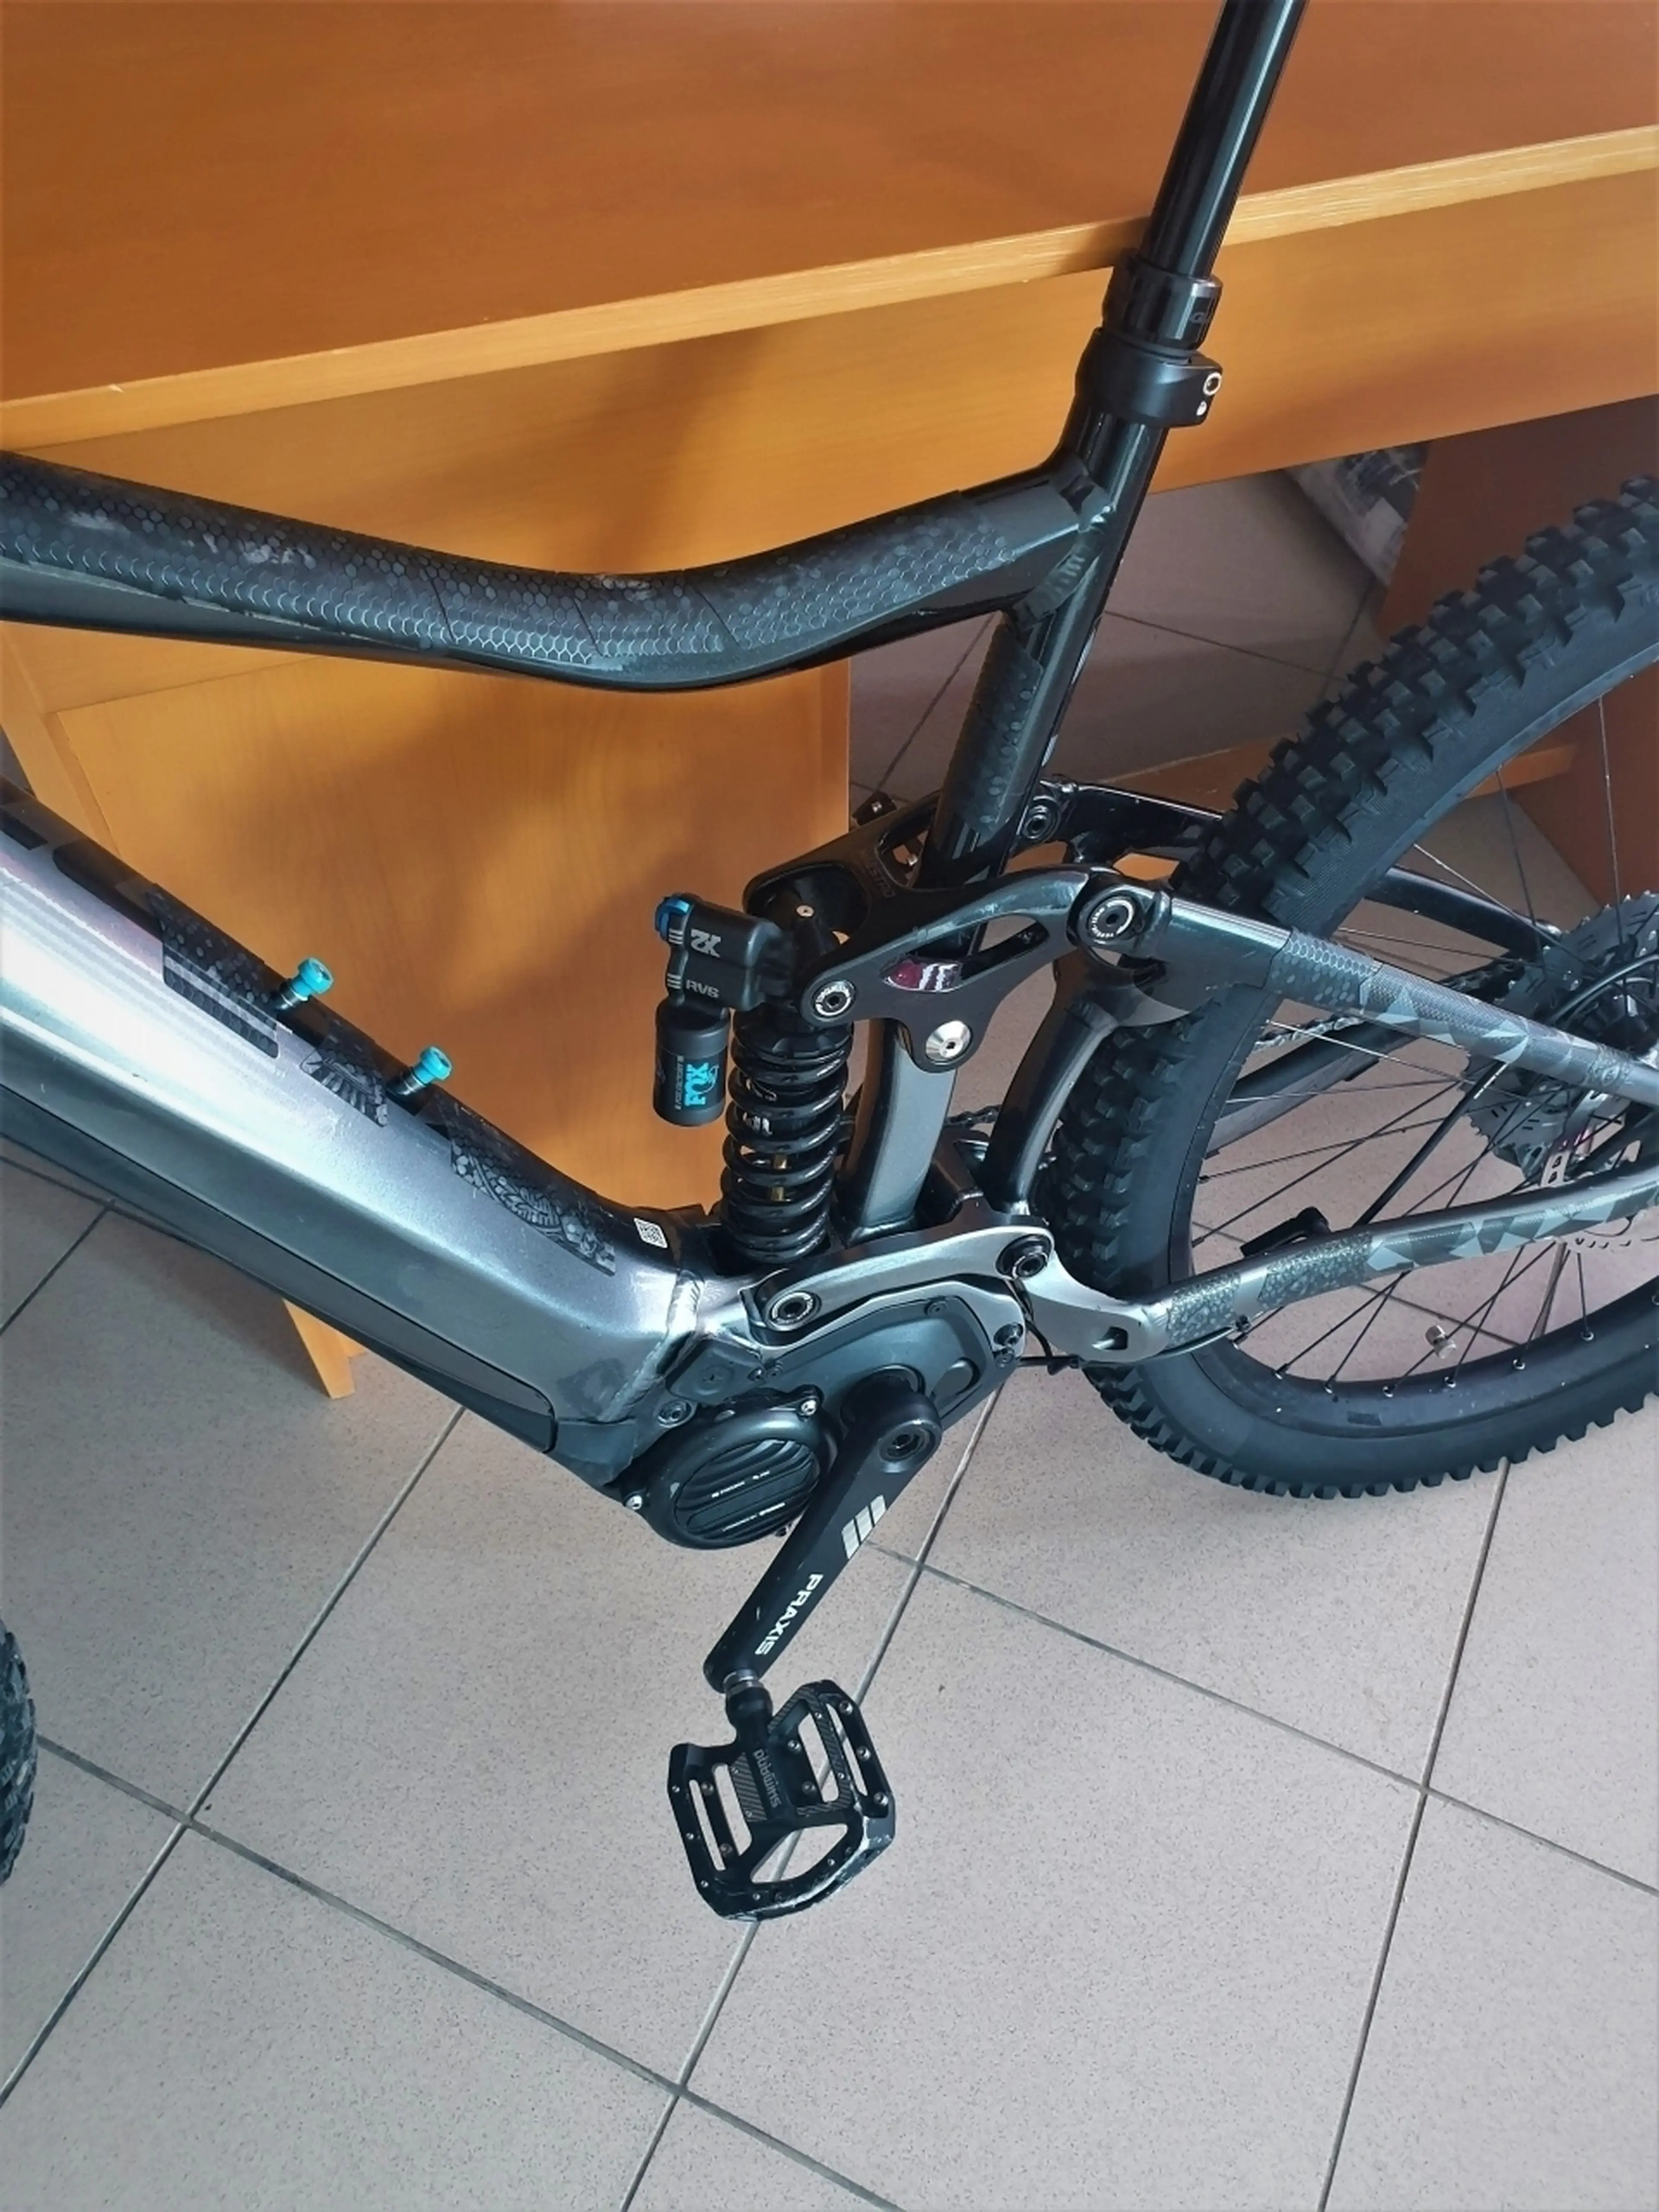 2. Bicicleta electrica full suspension Giant Trance SX E+ 1 Pro 2019